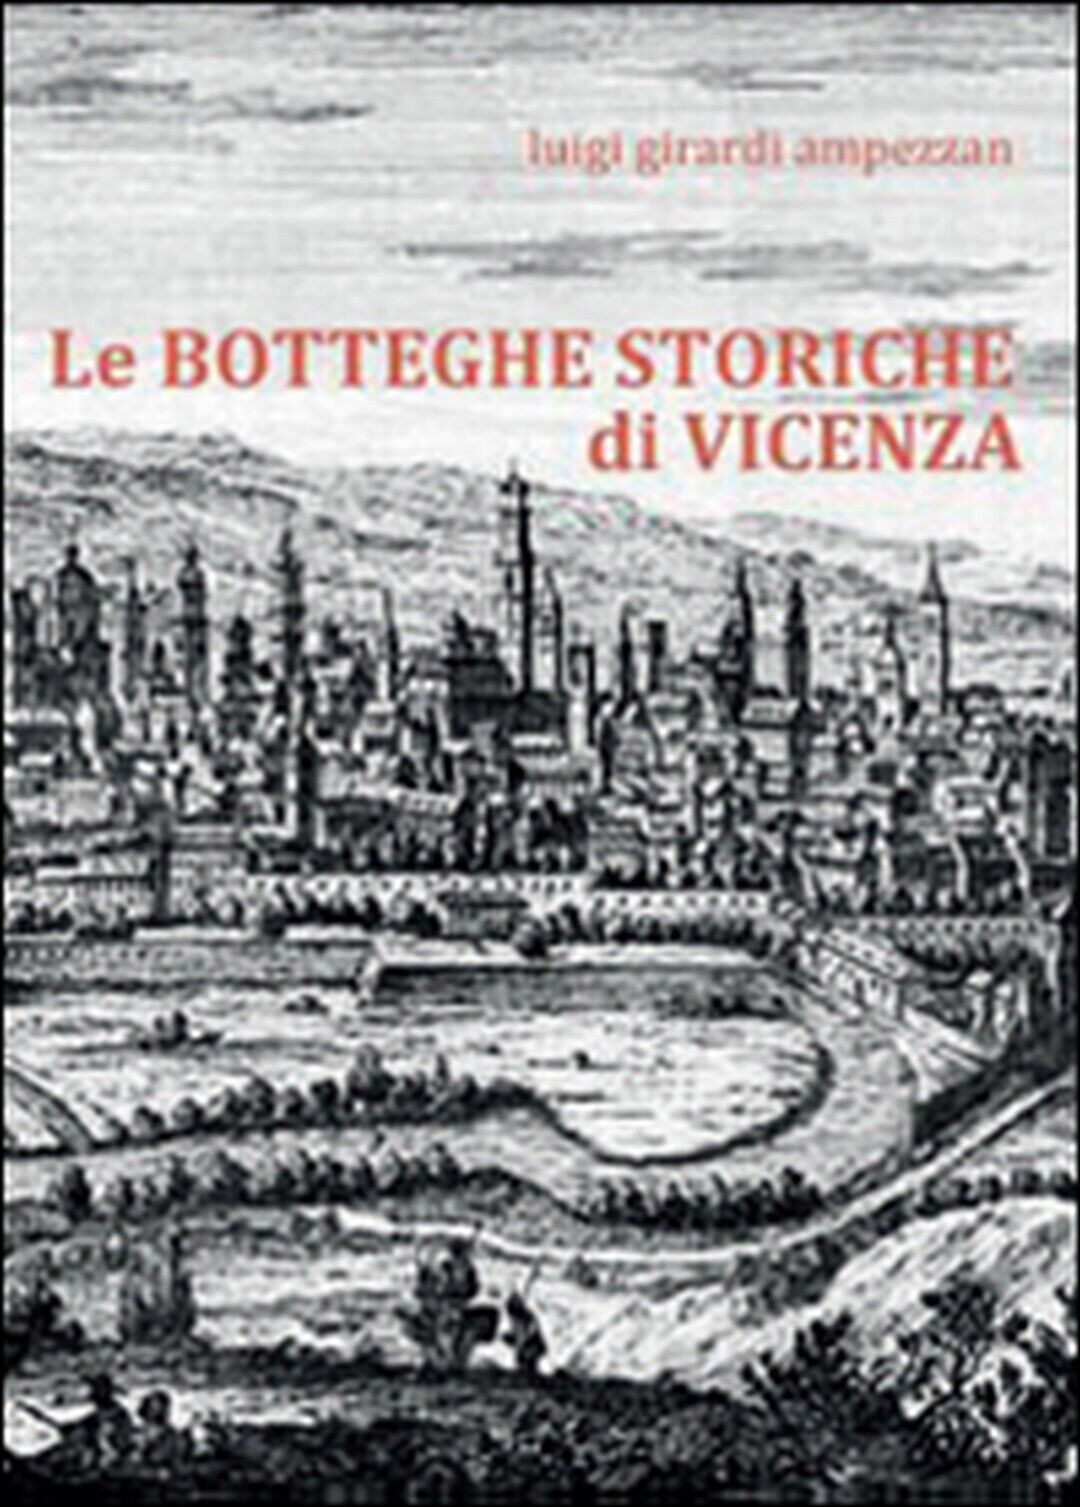 Le botteghe storiche di Vicenza  di Luigi Girardi Ampezzan,  2016,  Youcanprint